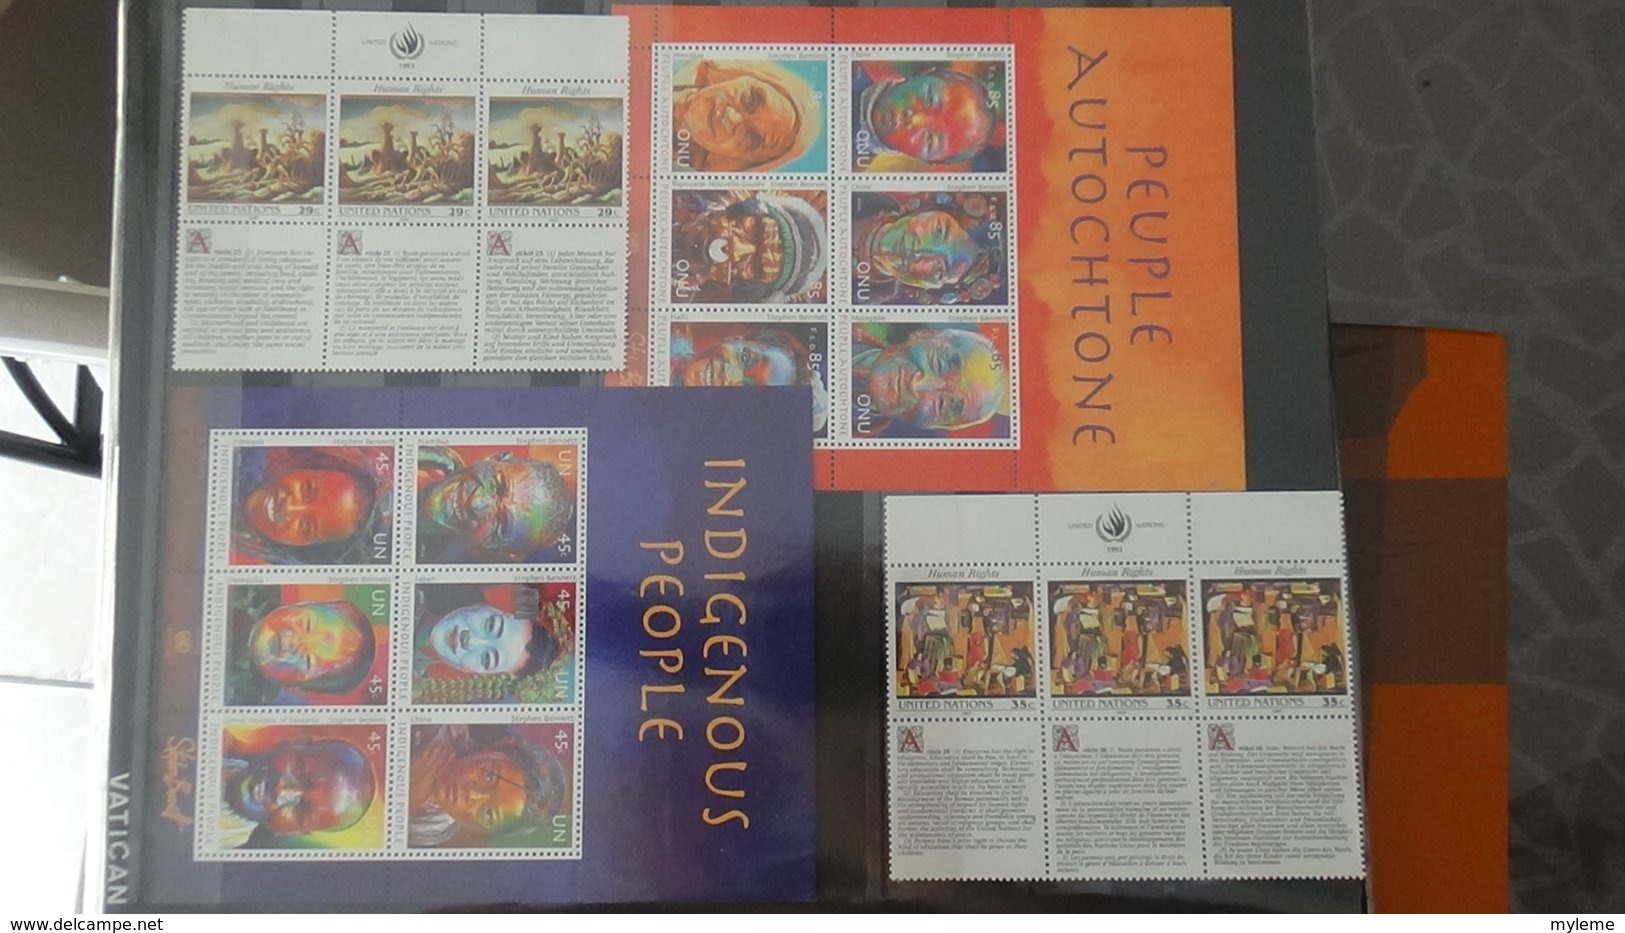 Belle collection des Nations UNies en timbres et blocs  **. A saisir !!!